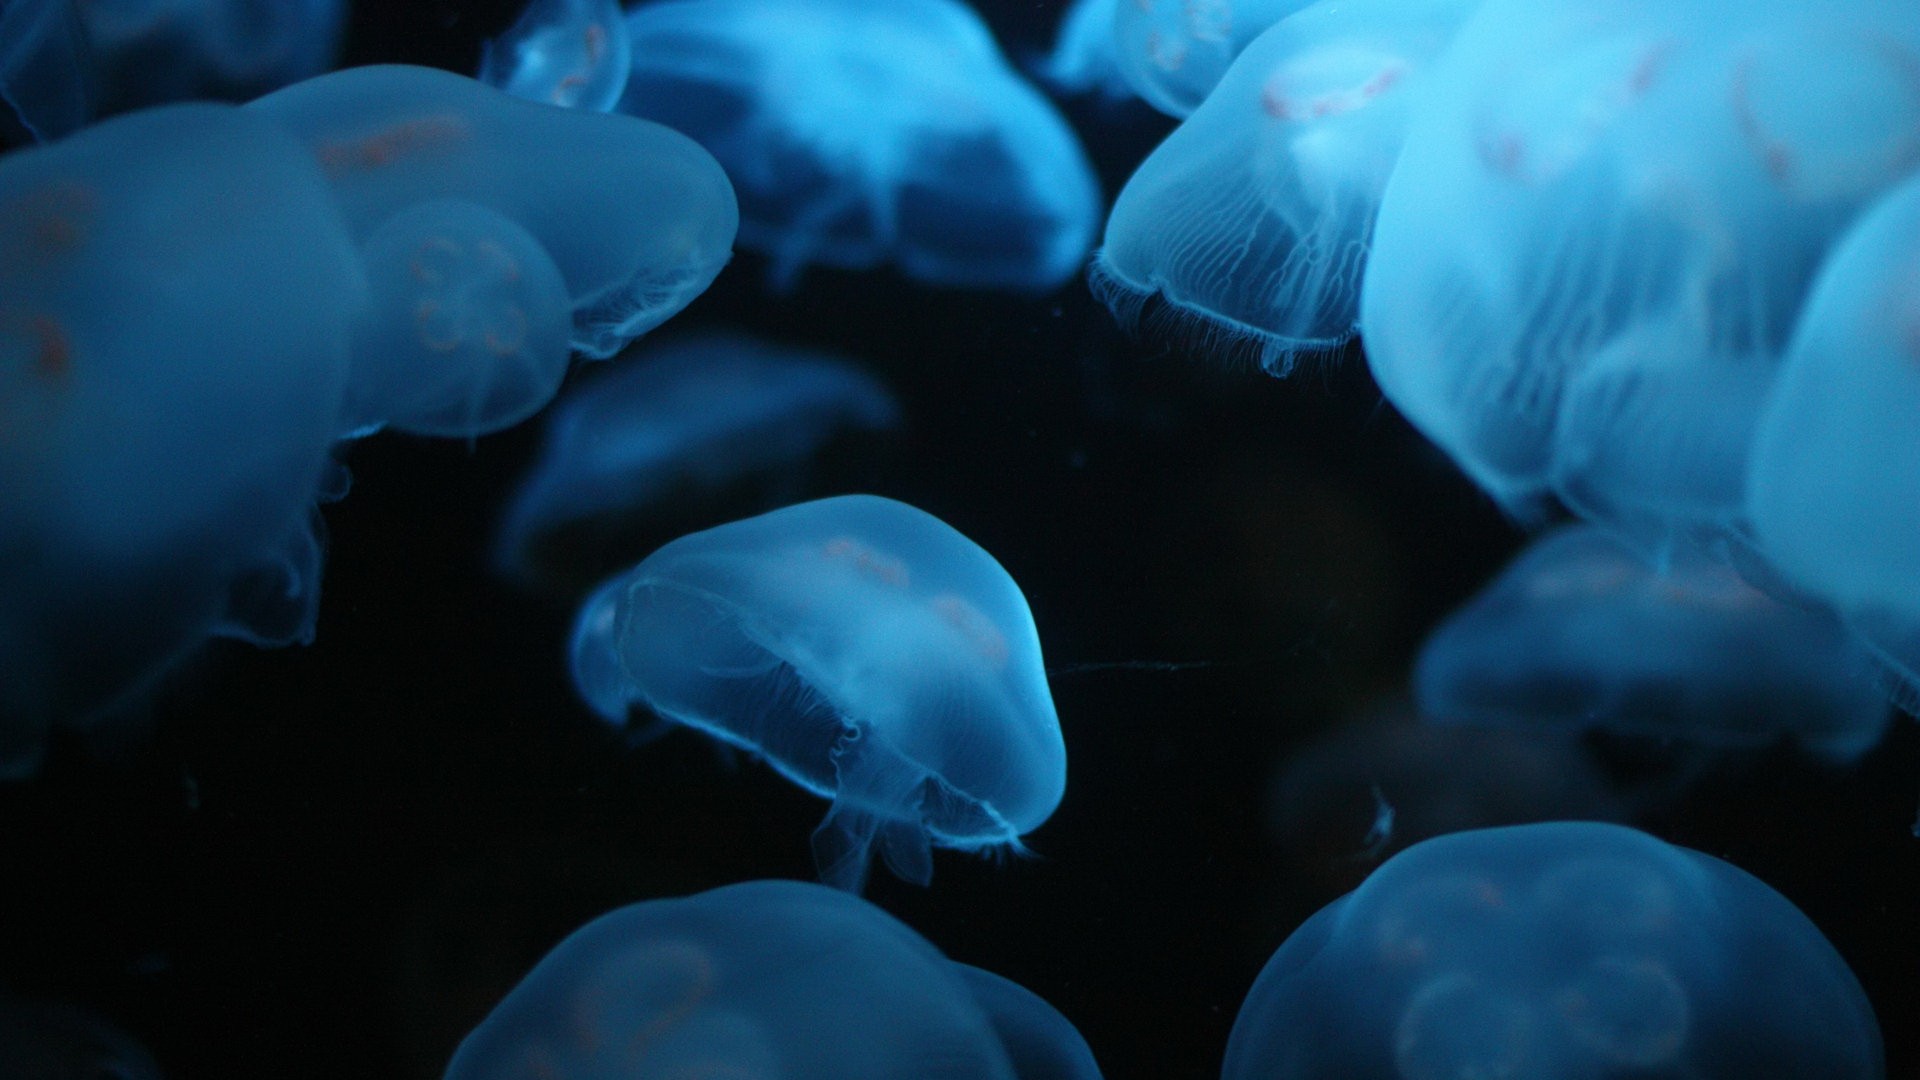 live wallpaper sott'acqua,medusa,blu,cnidaria,invertebrati marini,acqua